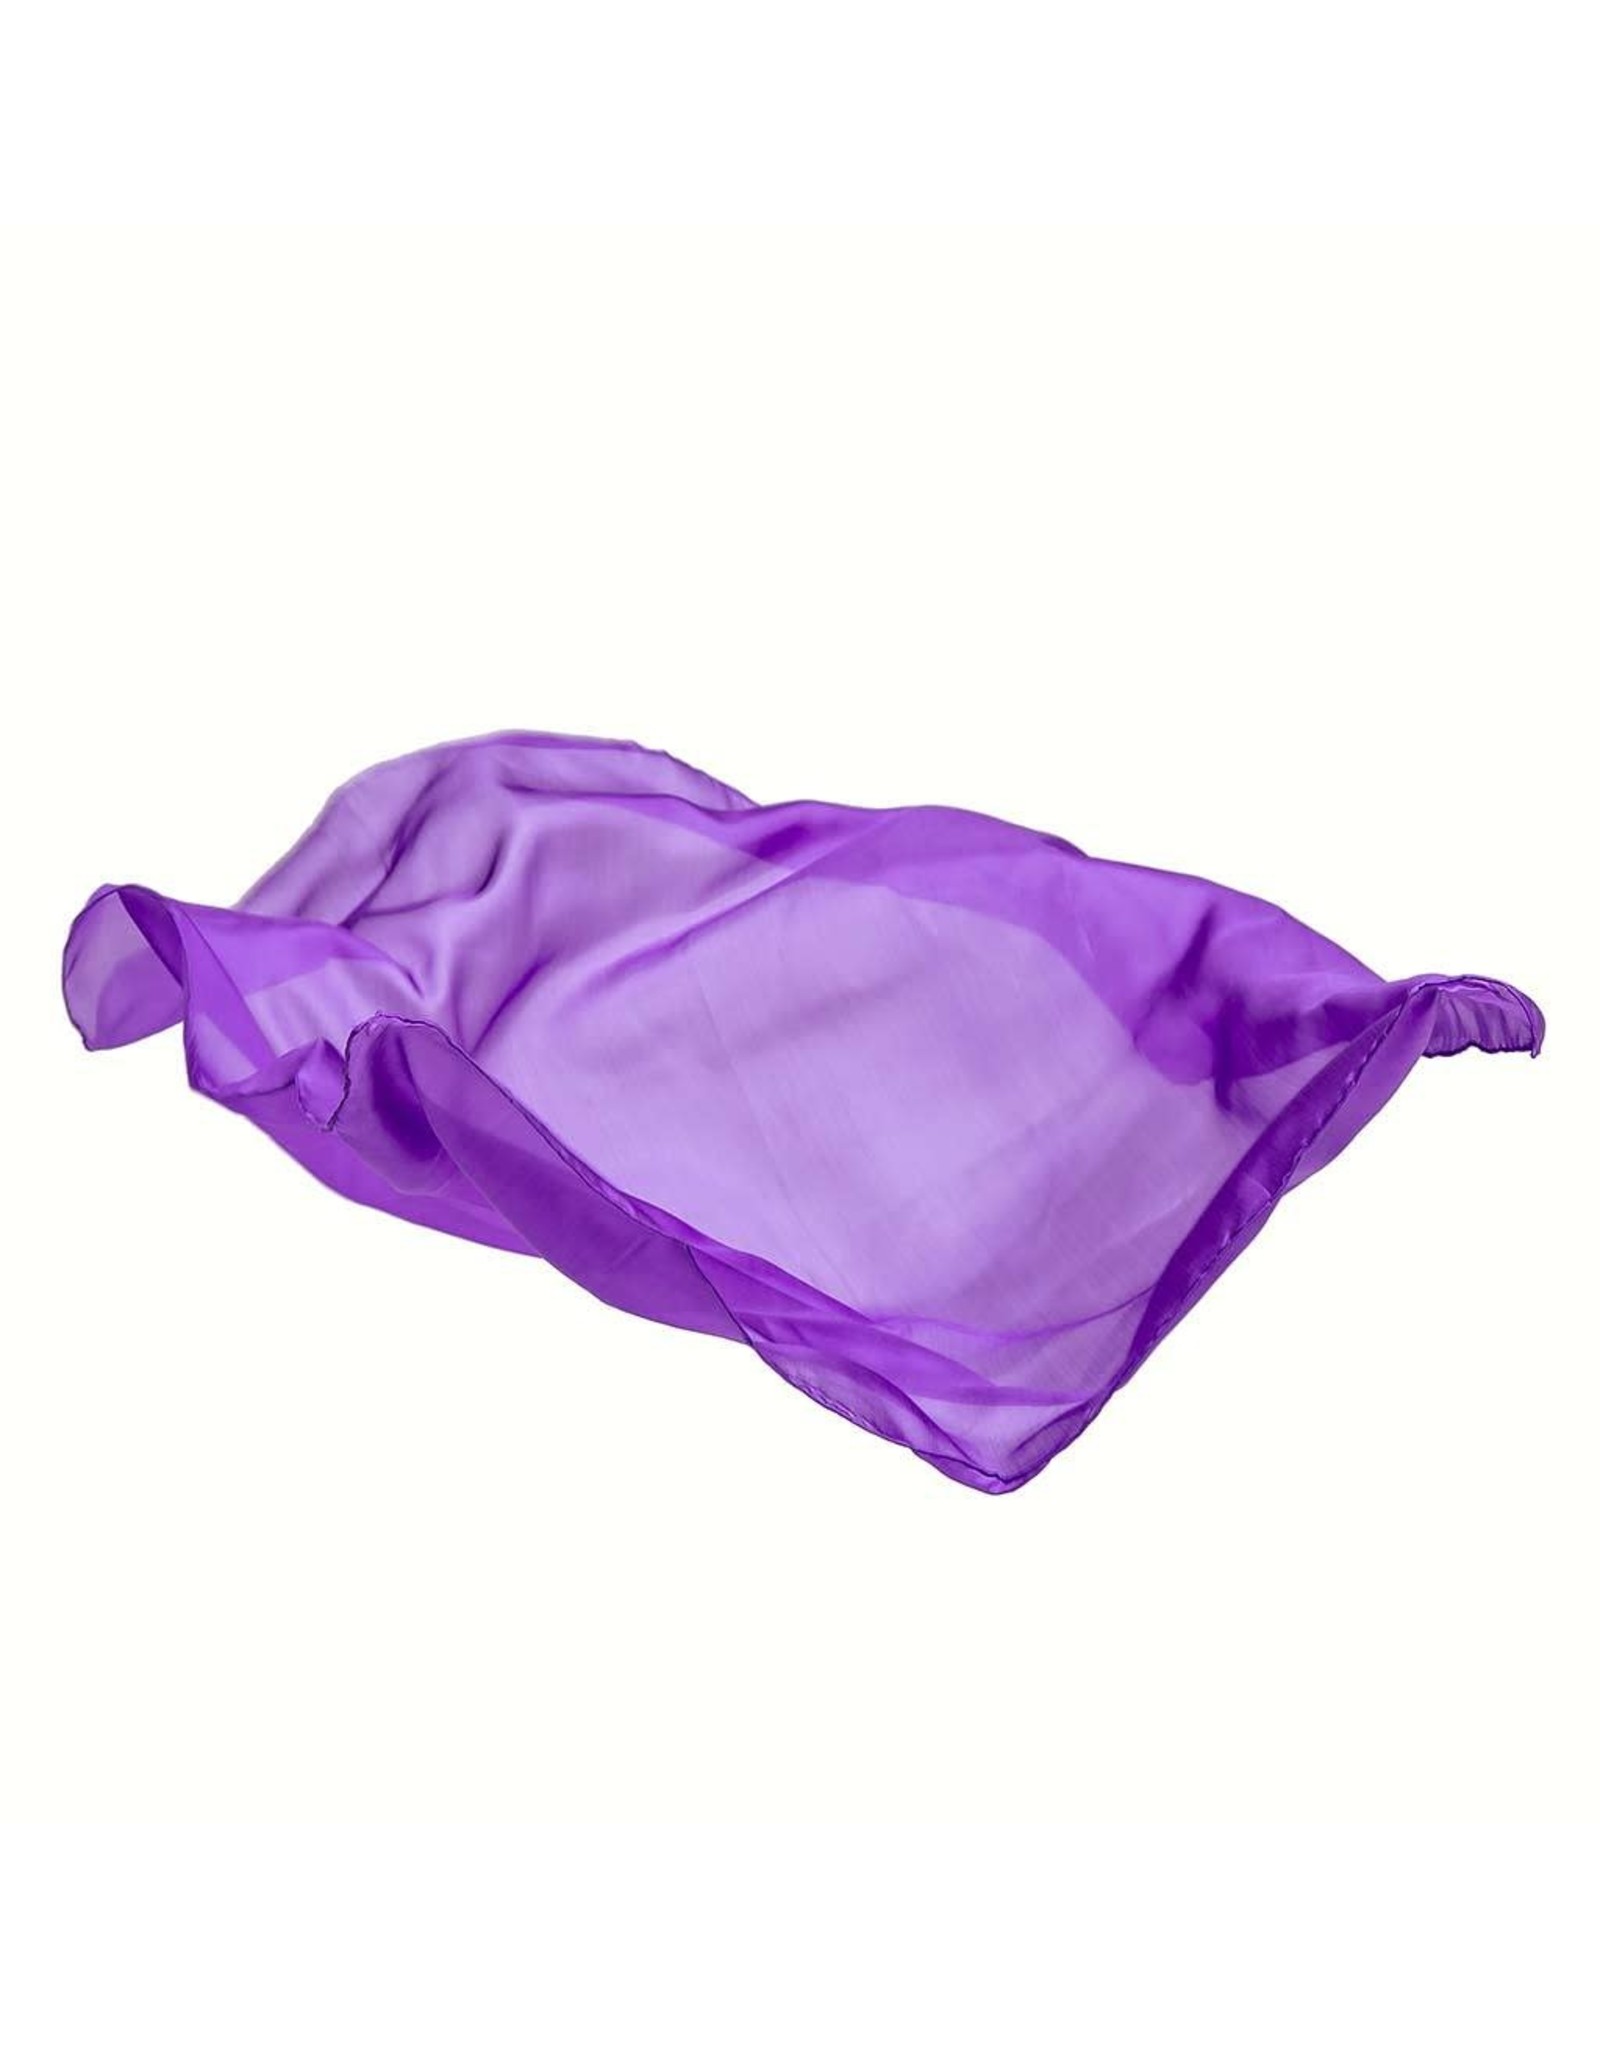 Sarah's Silks Enchanted Purple Playsilk